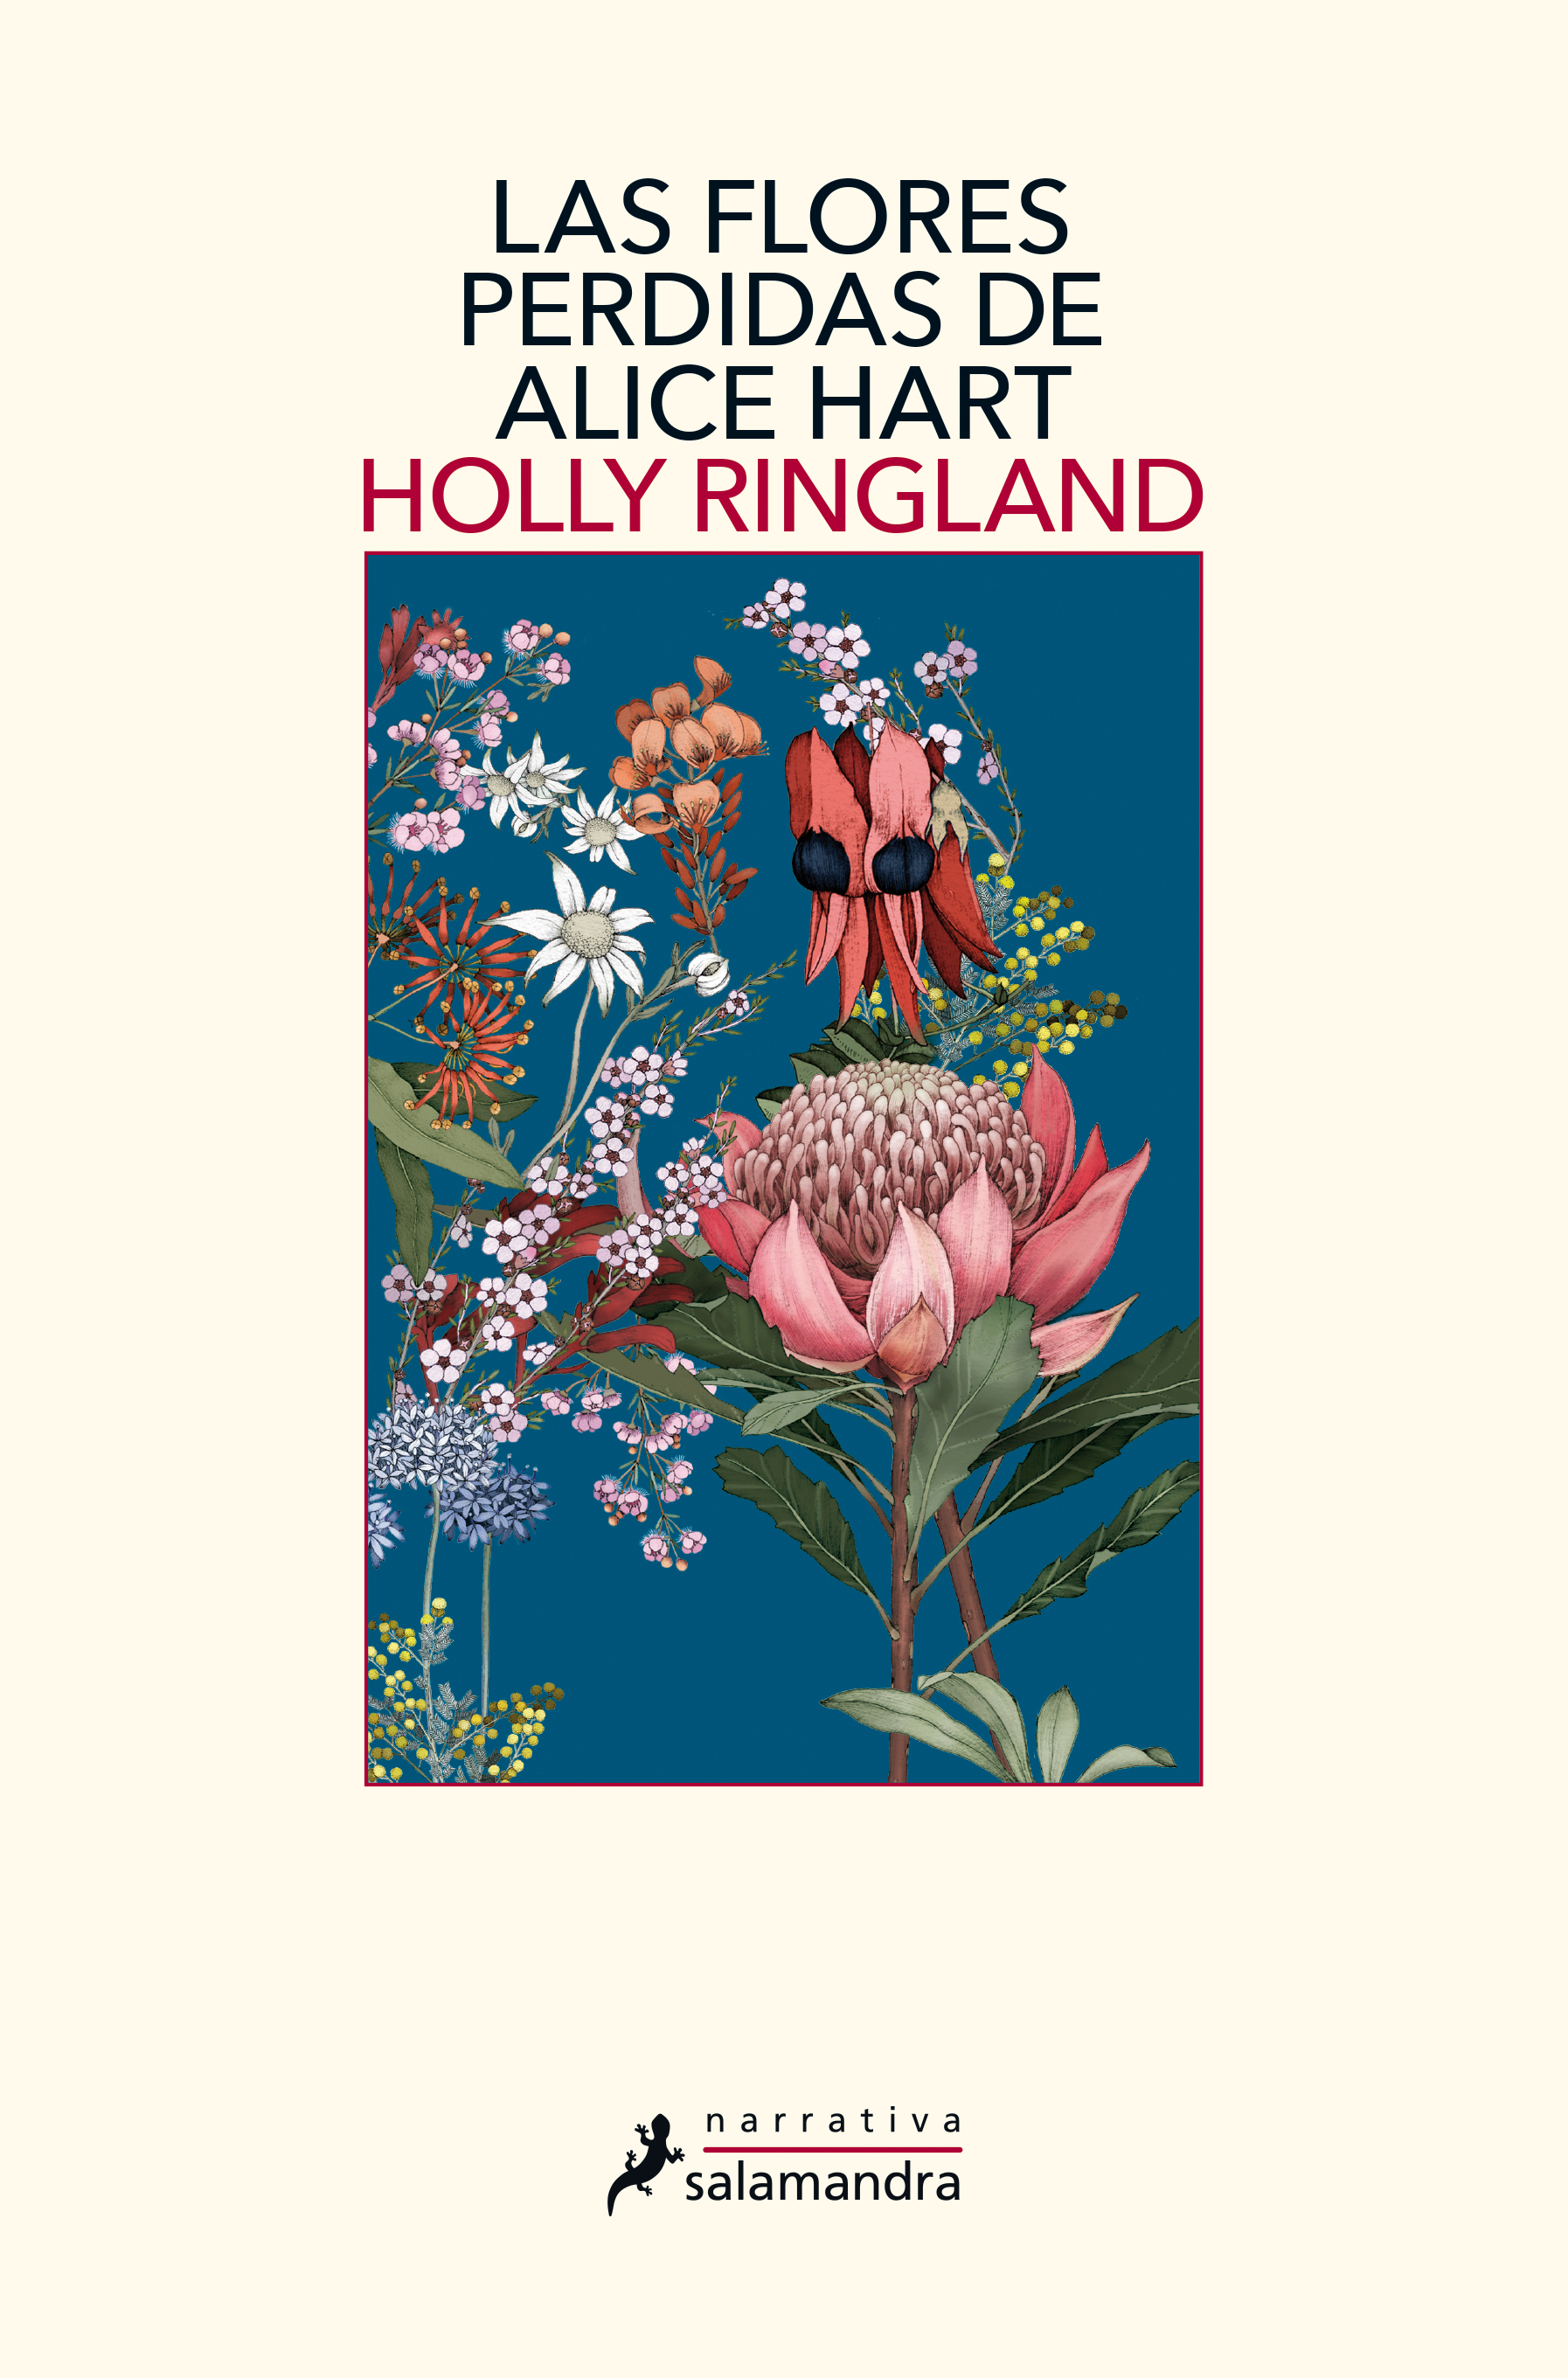 Las flores perdidas de Alice Hart, de Holly Ringland